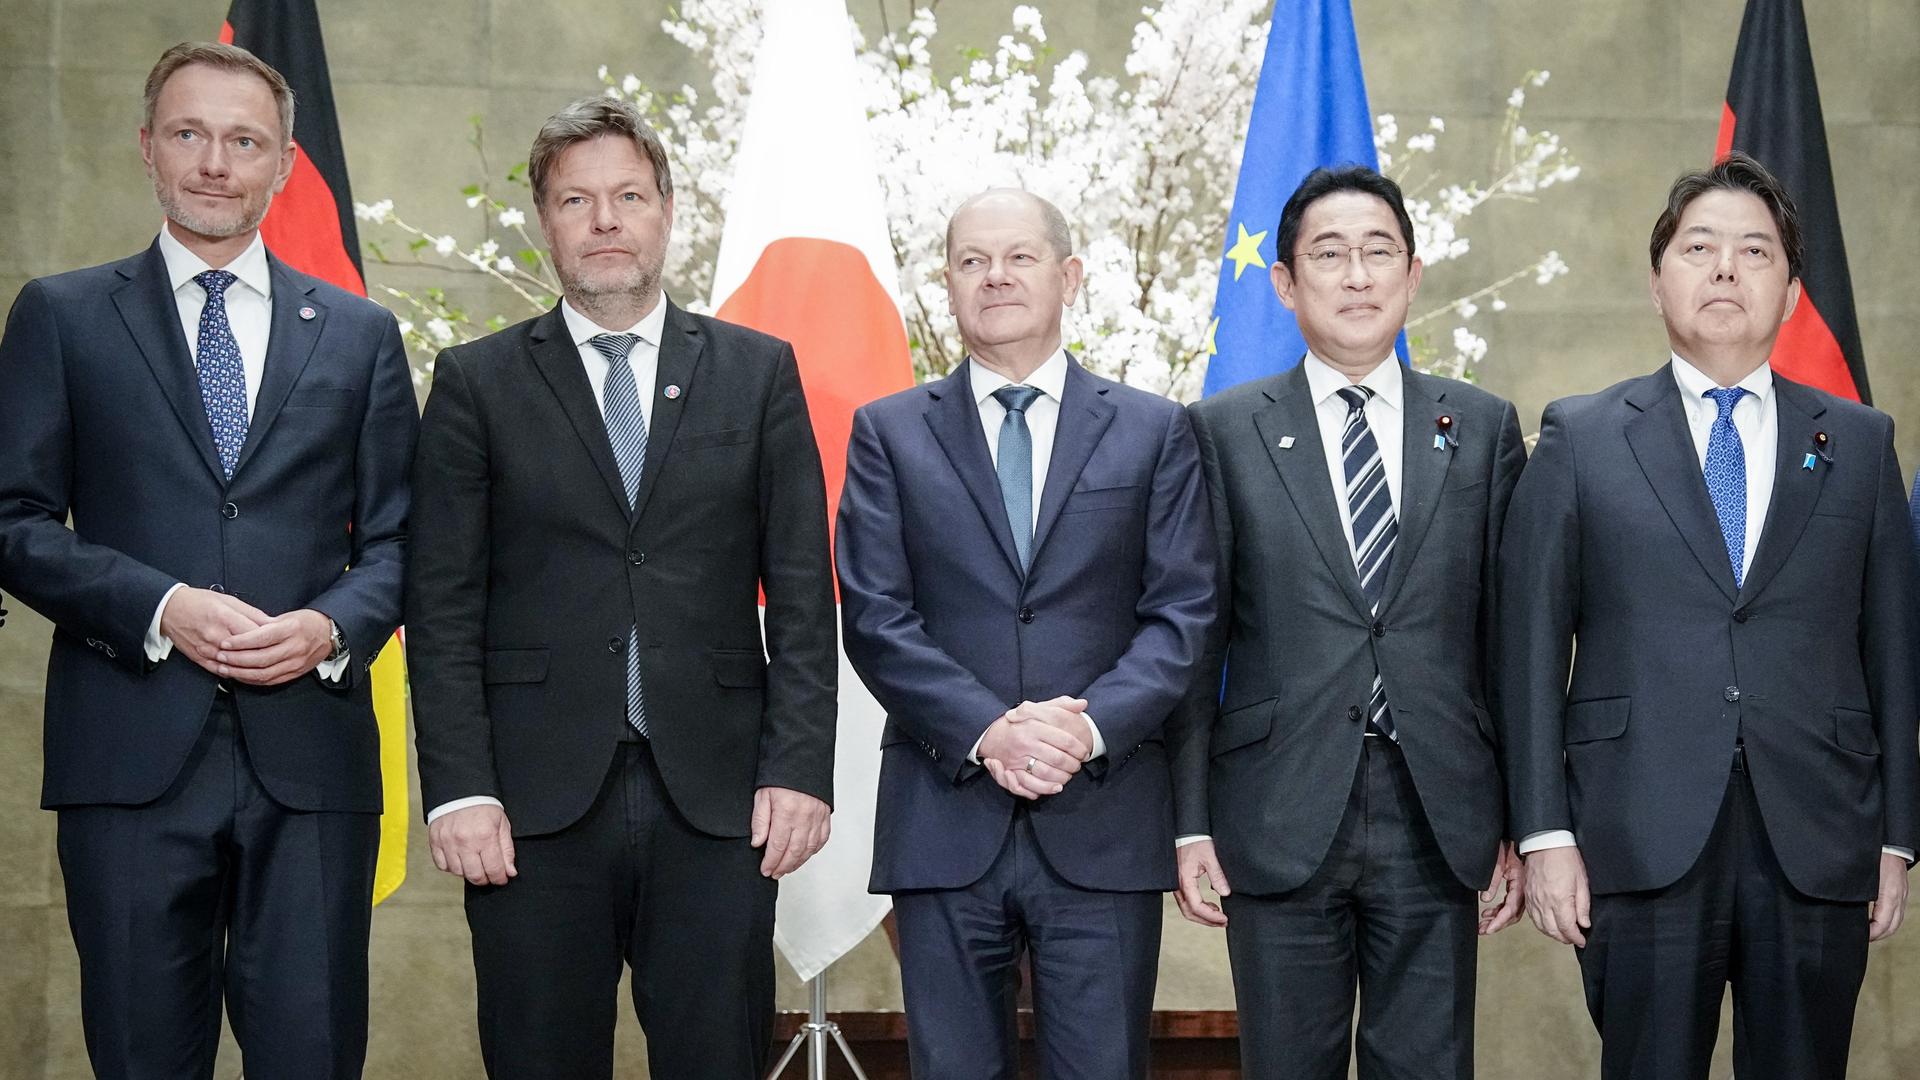 Finanzminister Christian Lindner, Wirtschaftsminister Robert Habeck und Bundeskanzler Olaf Scholz stehen neben dem japanischen Ministerpräsidenten Fumio Kishida und Außenminister Yoshimasa Hayashi vor einer japanischen, einer deutschen und einer europäischen Flagge.